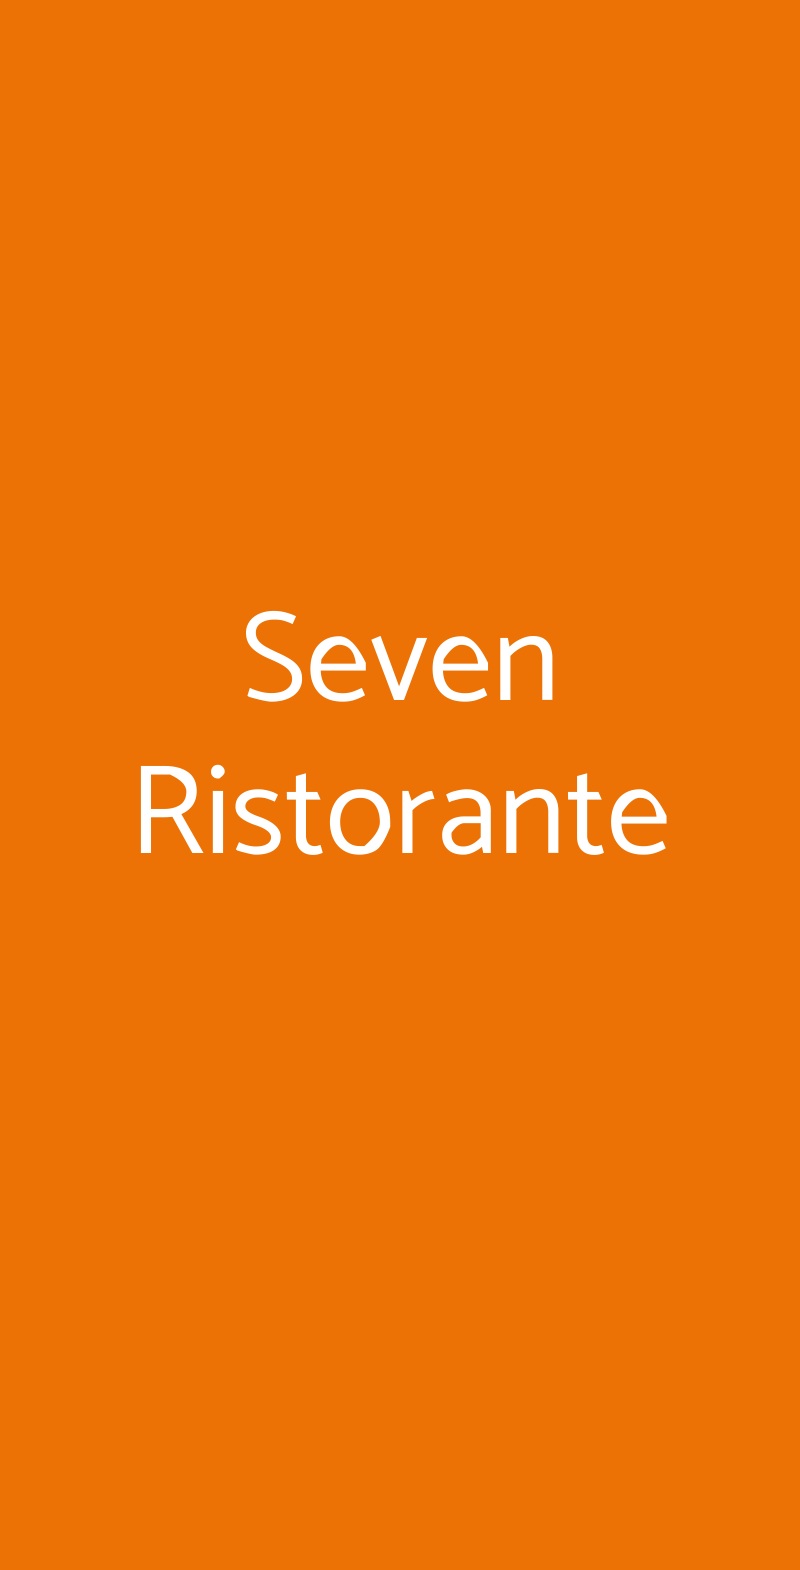 Seven Ristorante Cortona menù 1 pagina